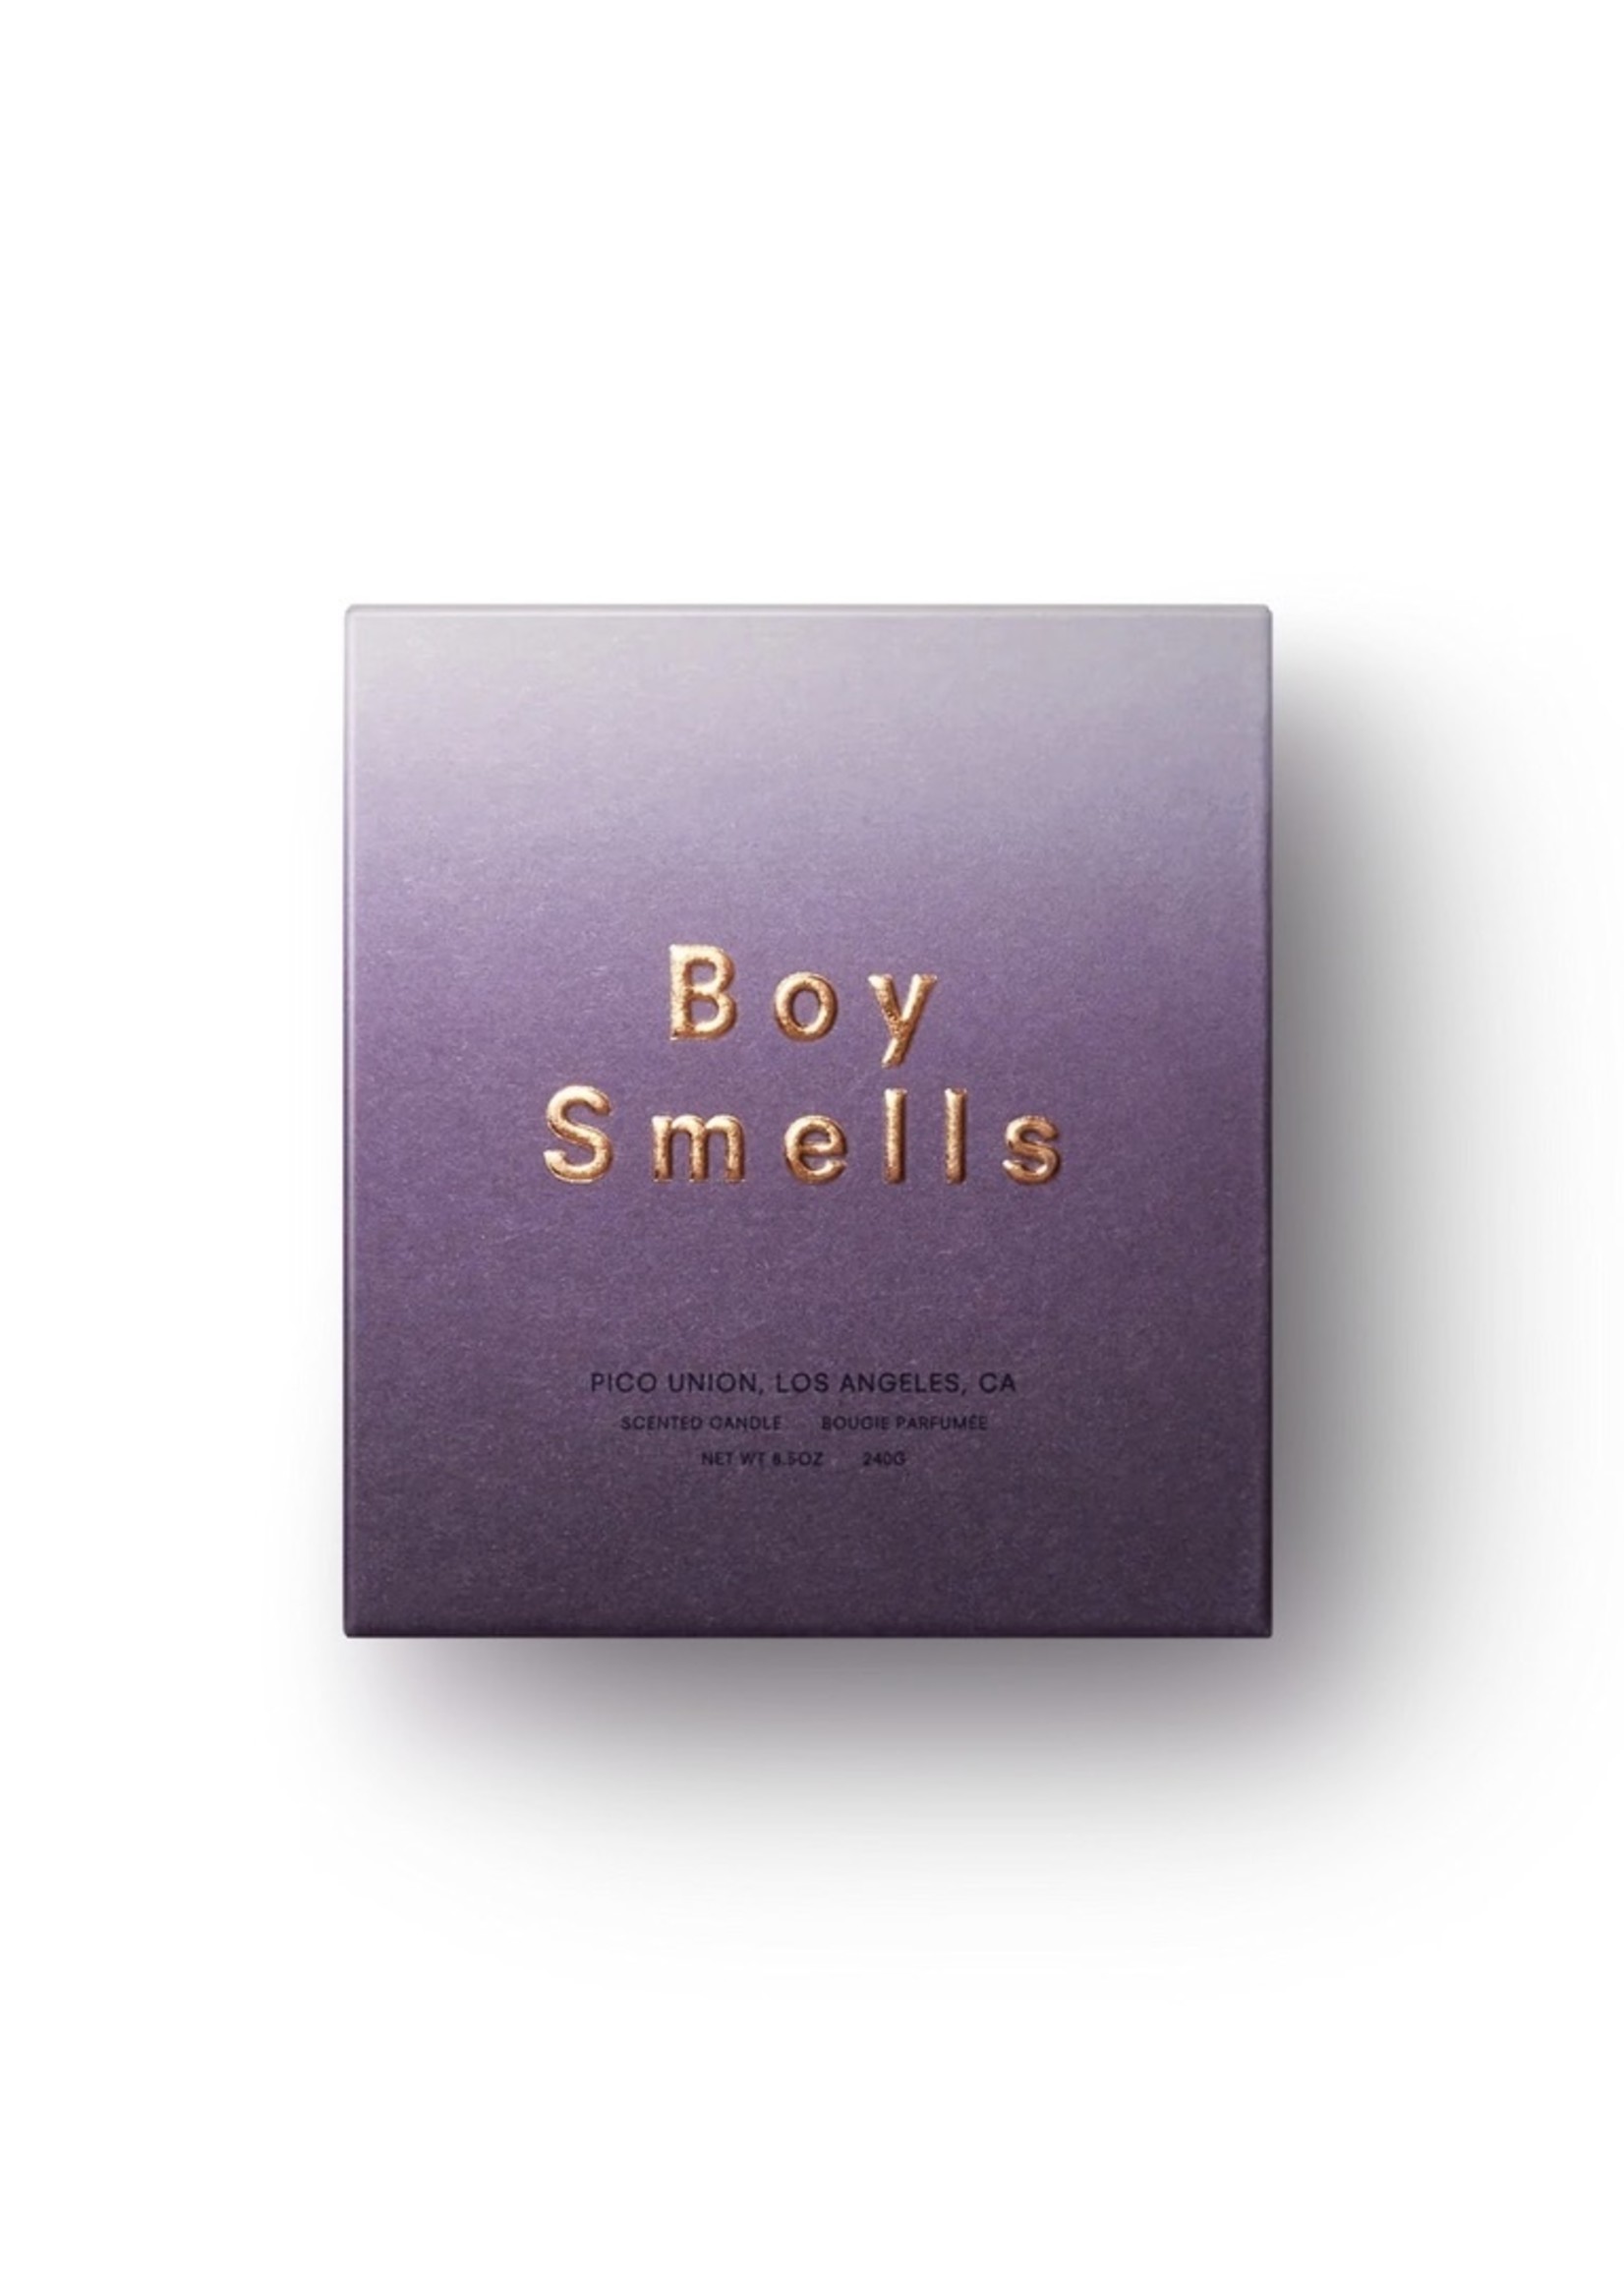 Boy Smells "Hypernature" candles by Boy Smells